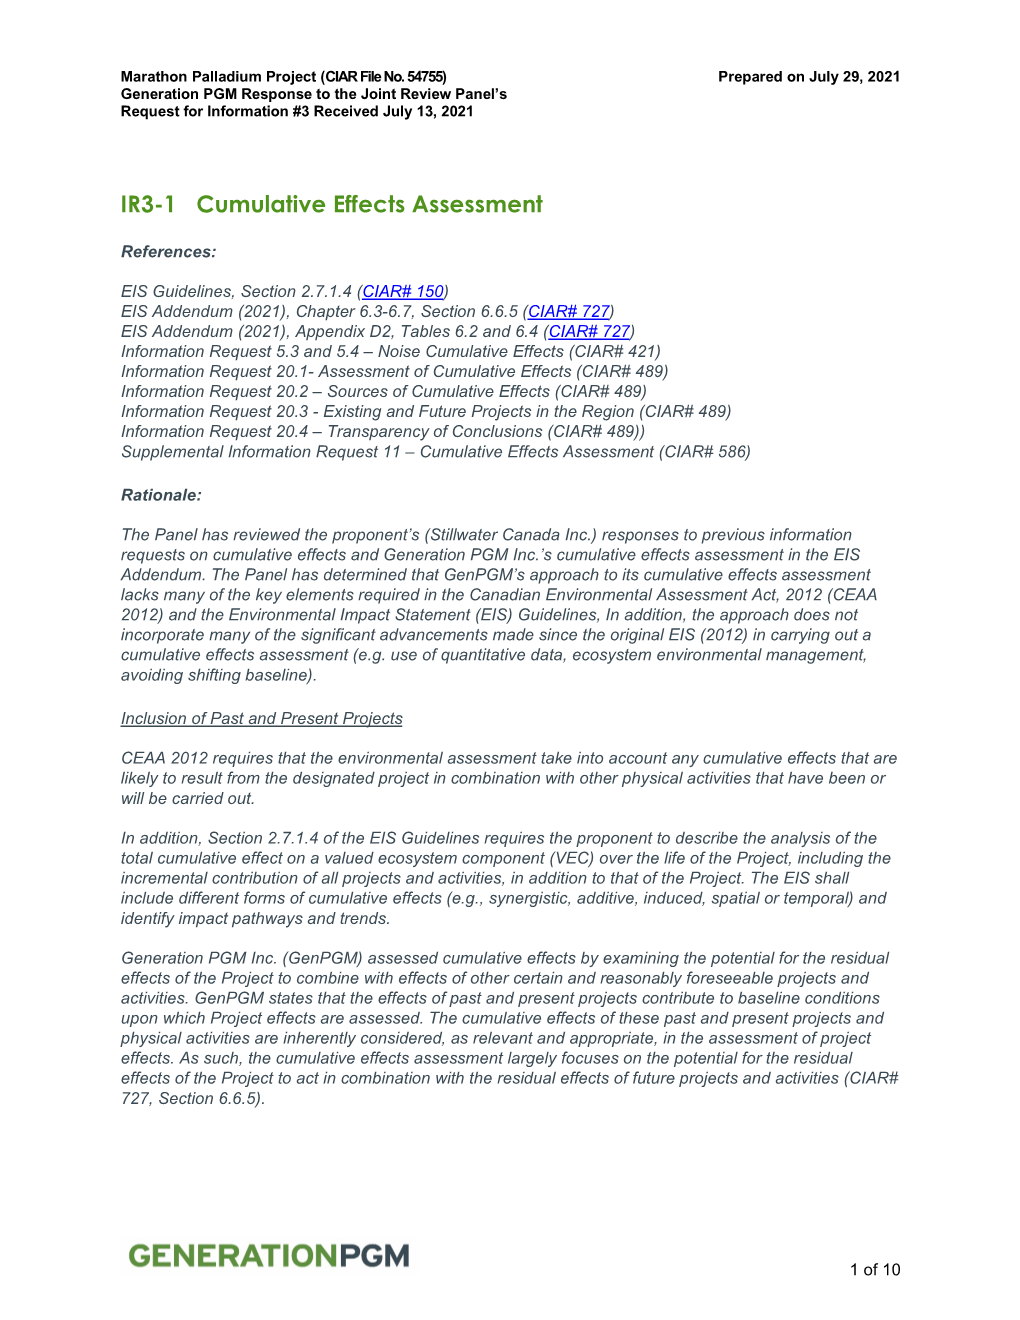 IR3-1 Cumulative Effects Assessment